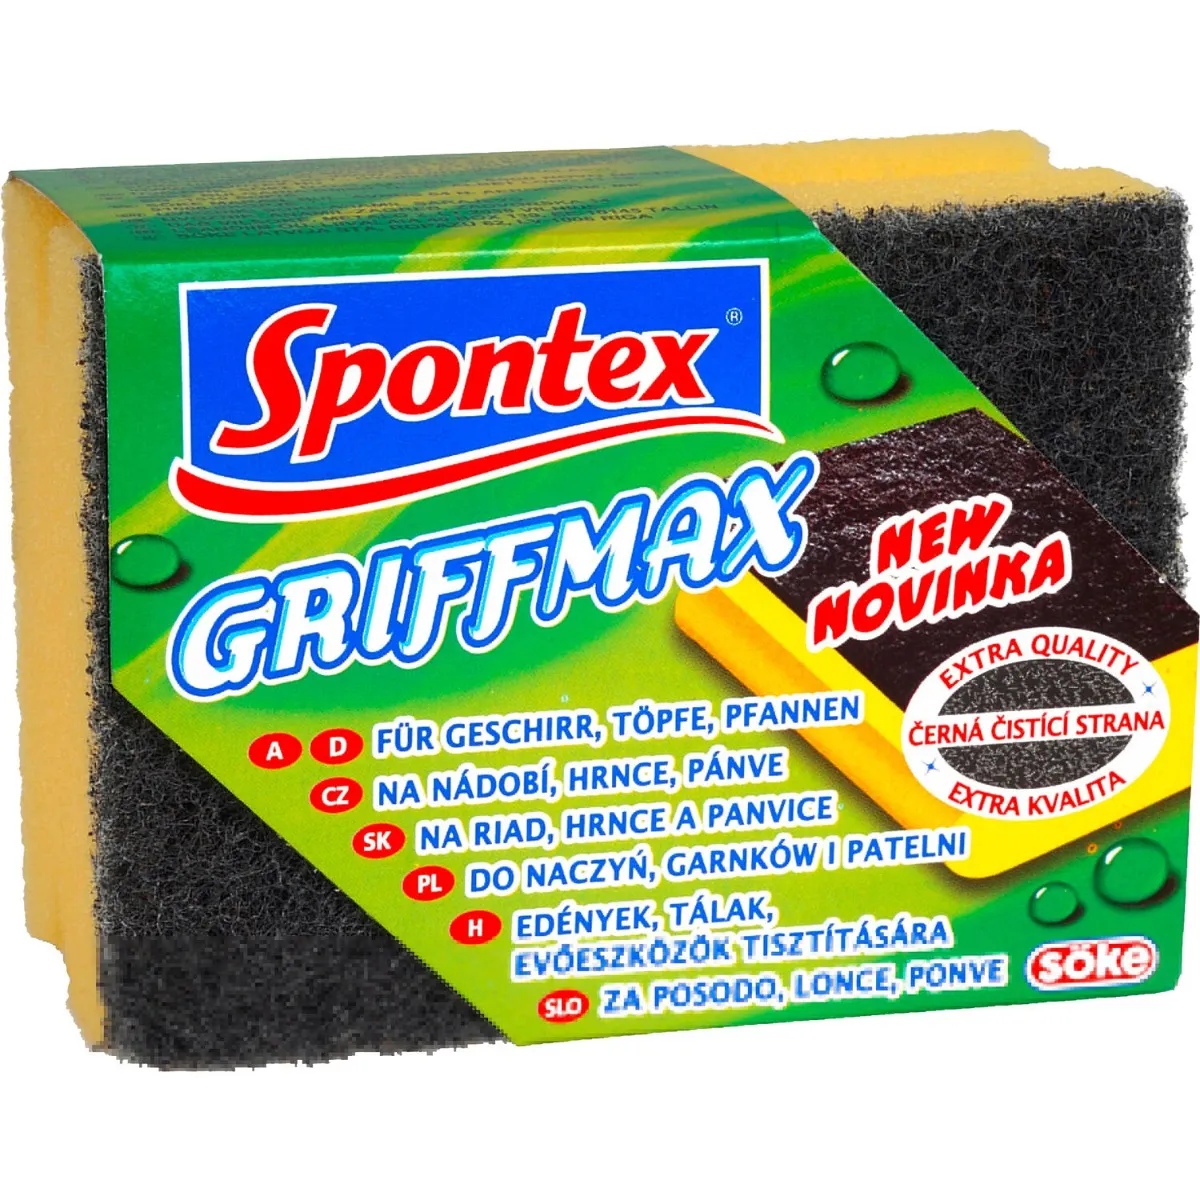 Spontex Griffmax tvarovaná hubka 1ks